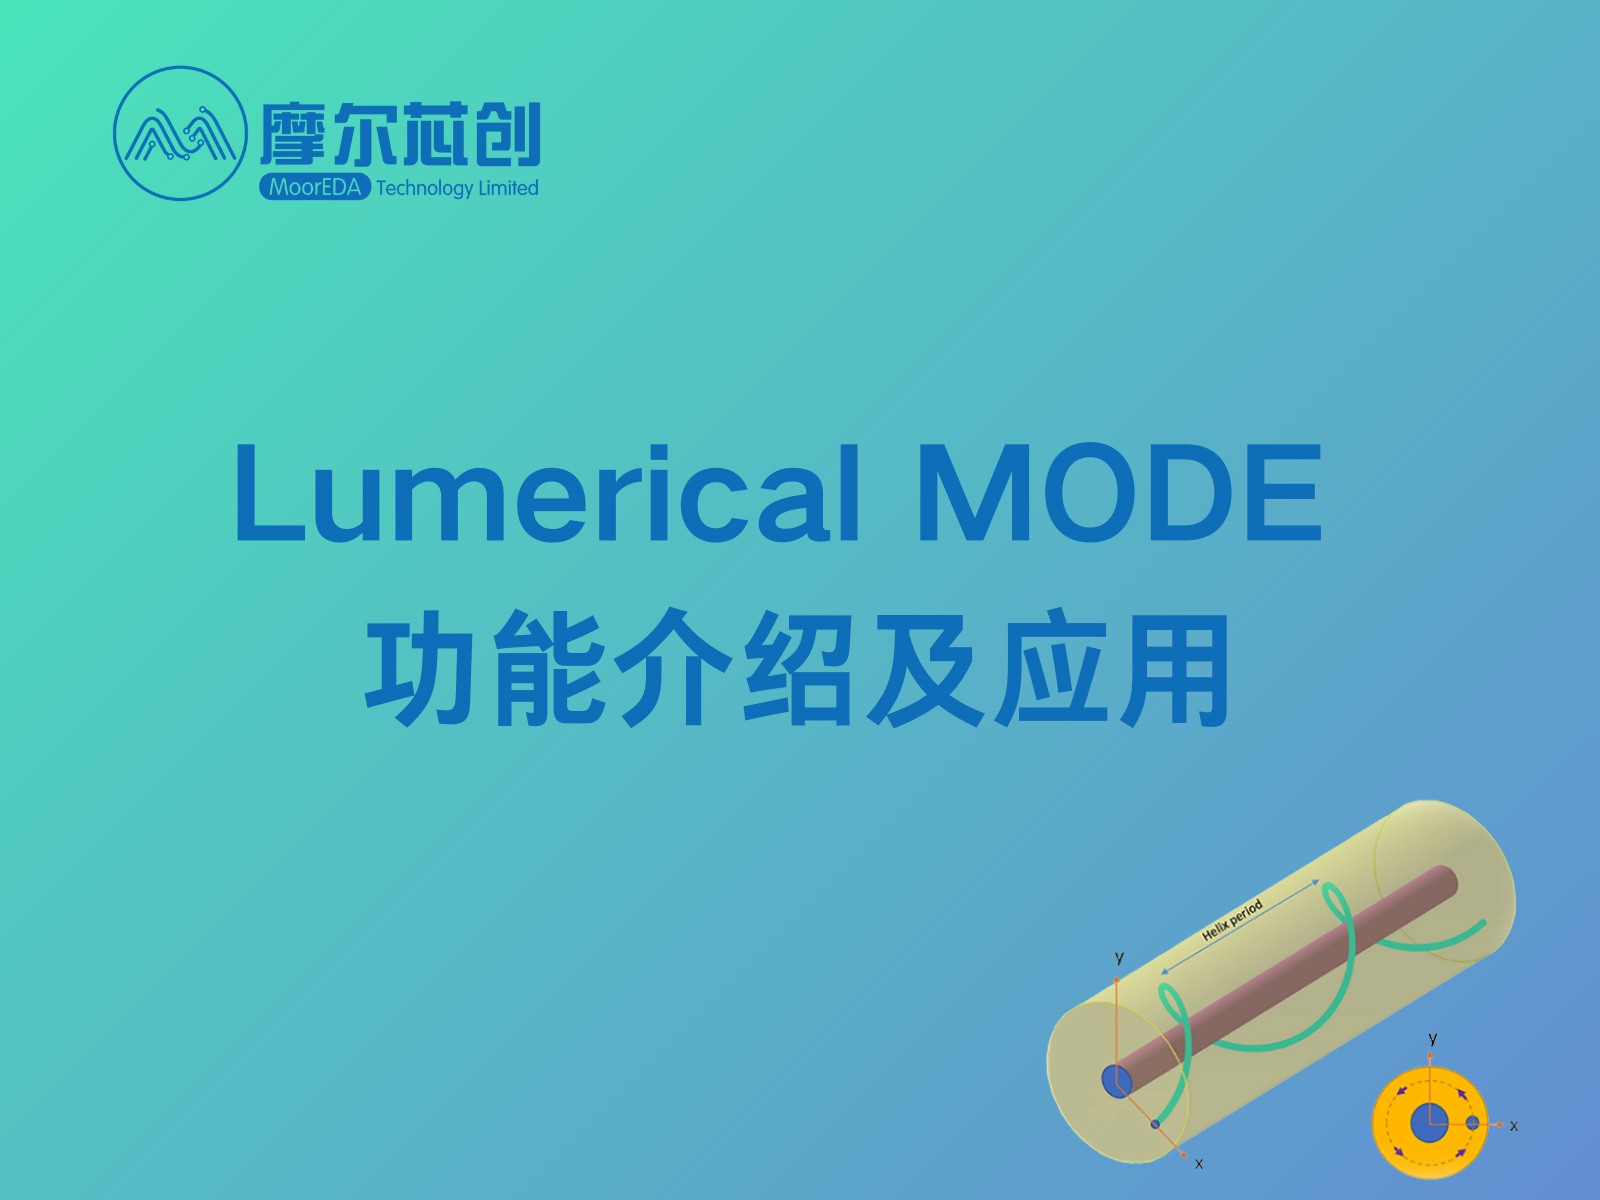 培训活动 | Lumerical MODE 功能介绍及应用